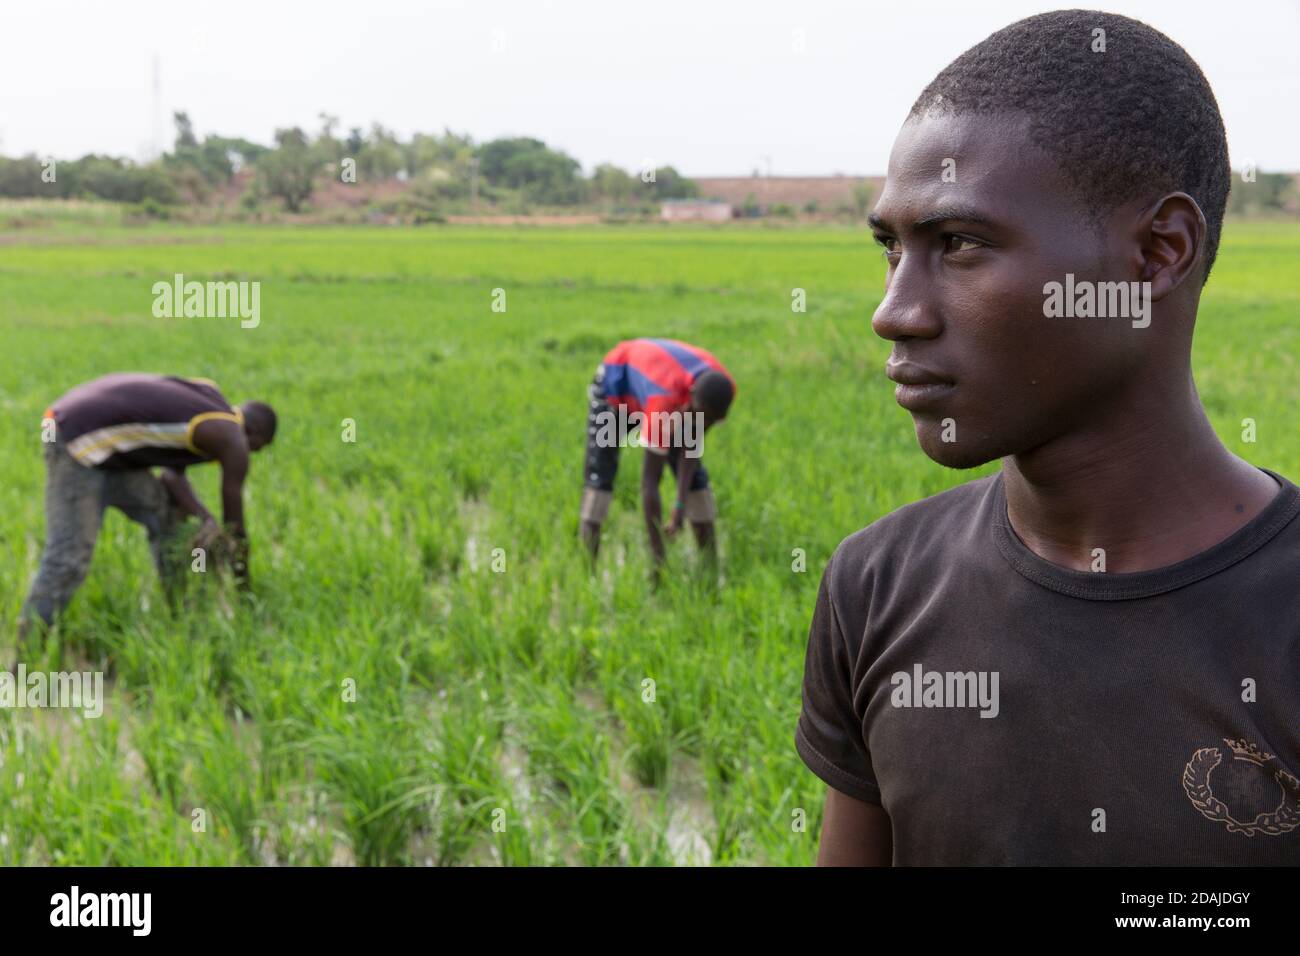 Selingue, Mali, 26 aprile 2015; Seydou Traore, 21 (T-shirt nera) Baissa Keita, 20, (camicia bianca e marrone) e Modibo Keita, 19. Il campo appartiene al padre e misura mezzo ettaro. Usano sia fertilizzanti organici che chimici, come la terra è povera. Il padre vorrebbe avere un po' di terreno nuovo, ma non può permetterselo. Pagano 35,000 CFA per stagione per l'acqua di irrigazione. Normalmente un ettaro di riso richiede 4 sacchi di NPK e 4 sacchi di fertilizzante Uree. Questo costa 100,000 CFA per ettaro. Da Selingue il coltivatore può ottenere di solito 5 a 6 tonnellate di riso per ettaro. Foto Stock